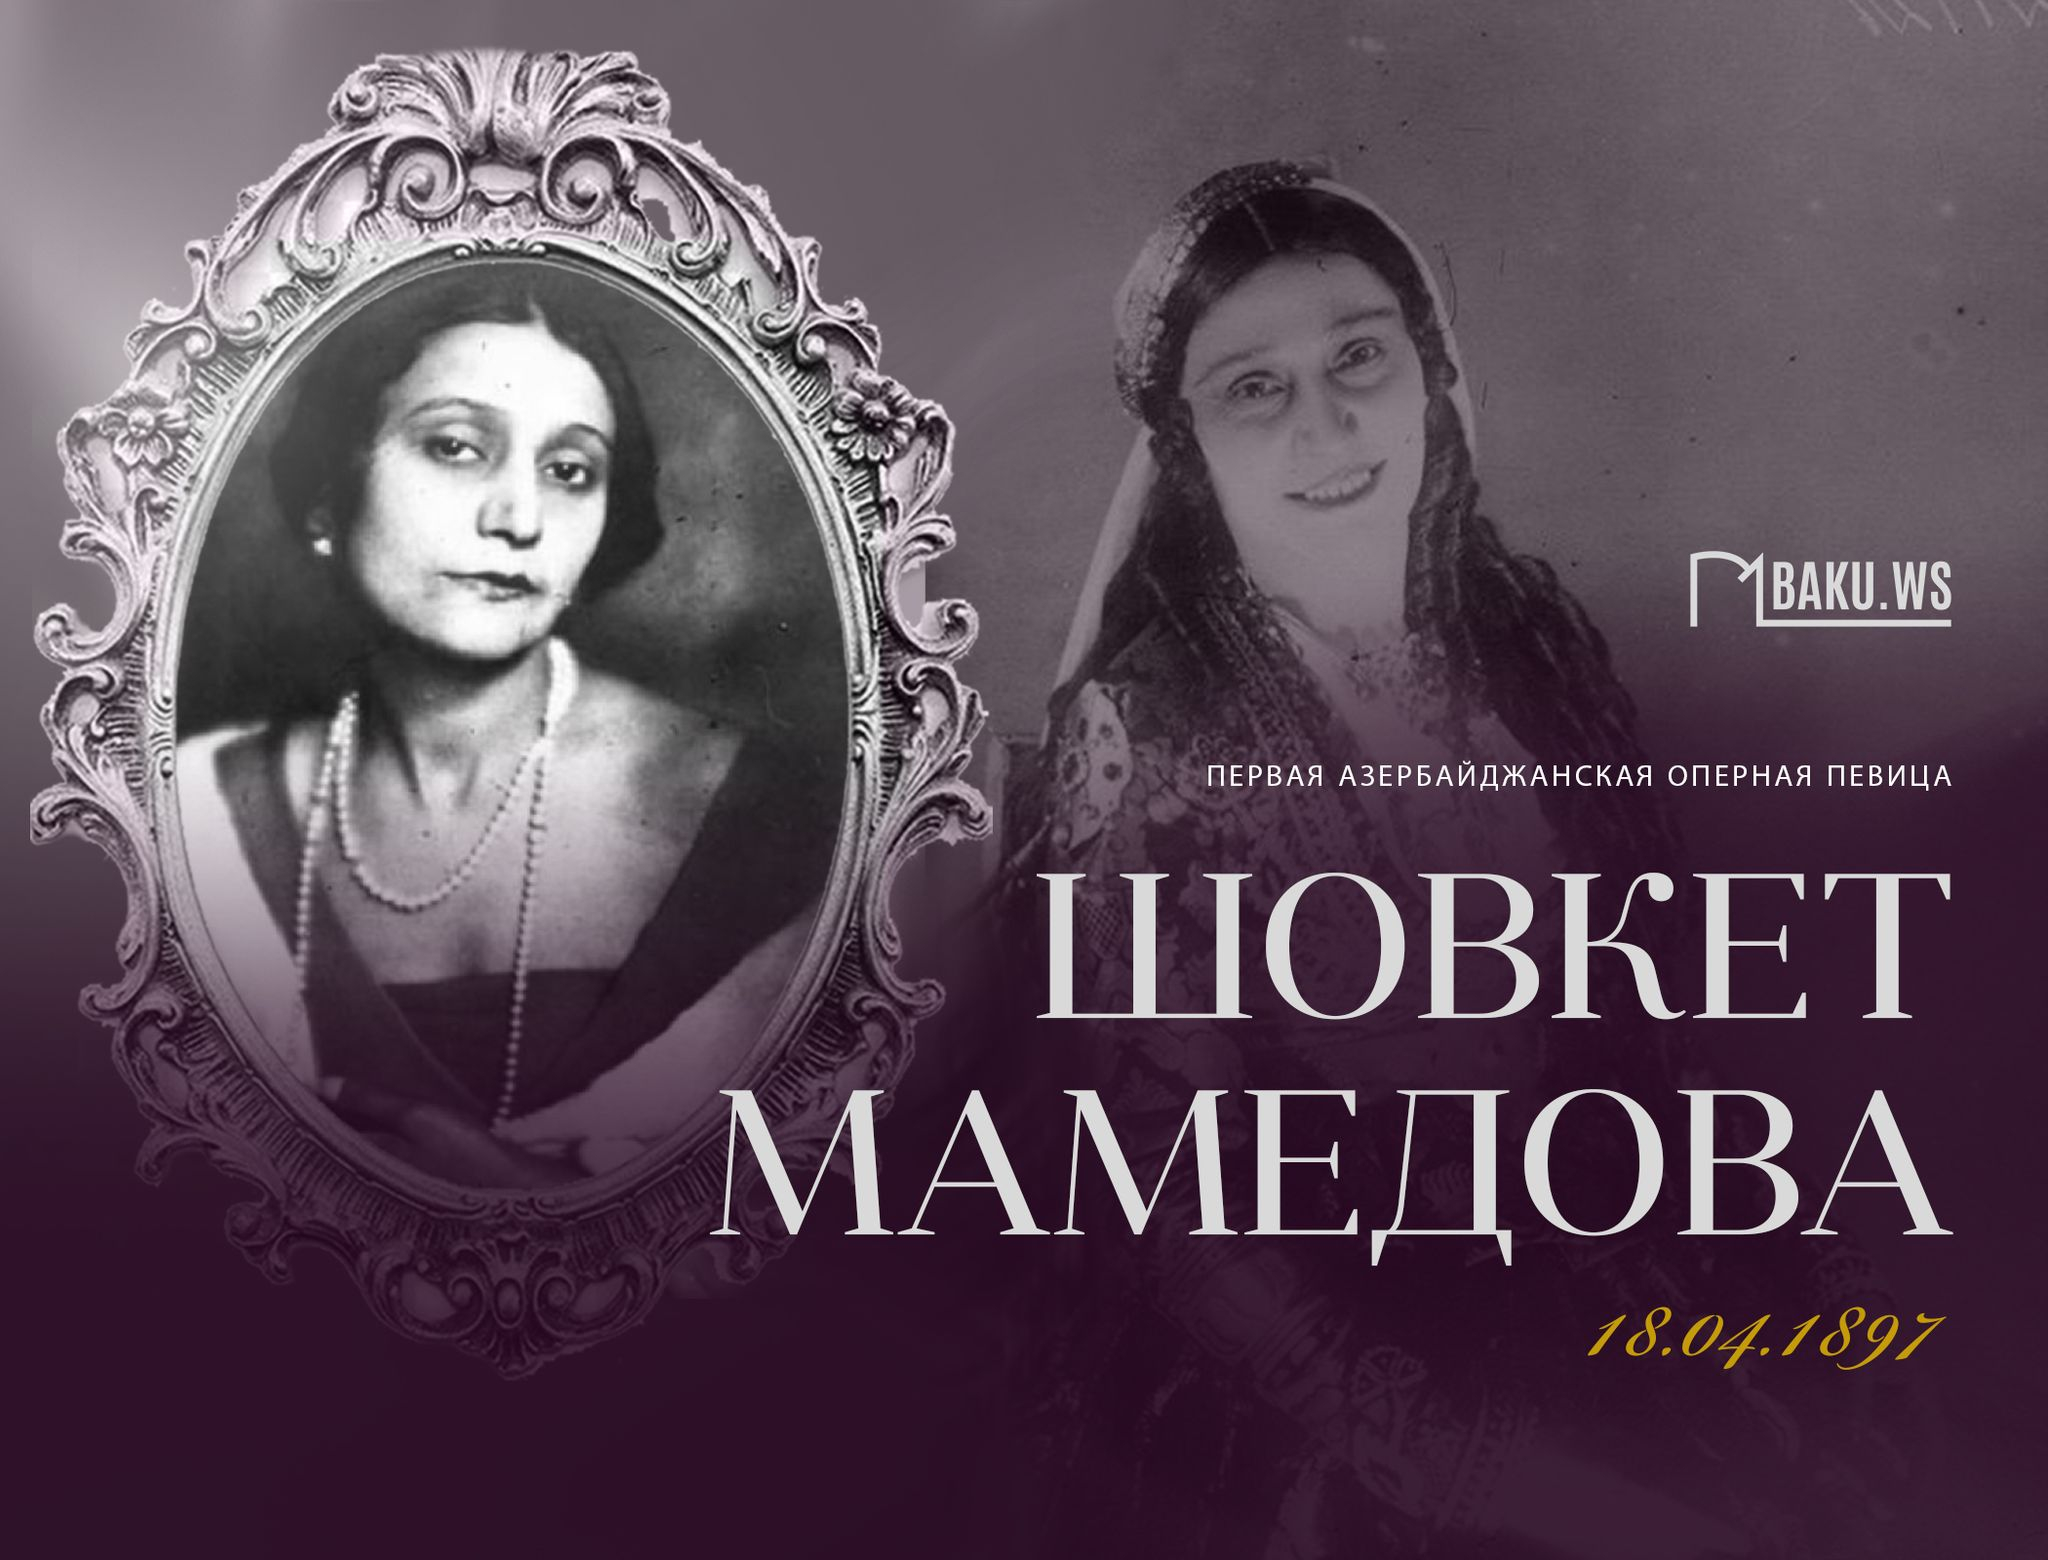 Сегодня день рождения Шовкет Мамедовой